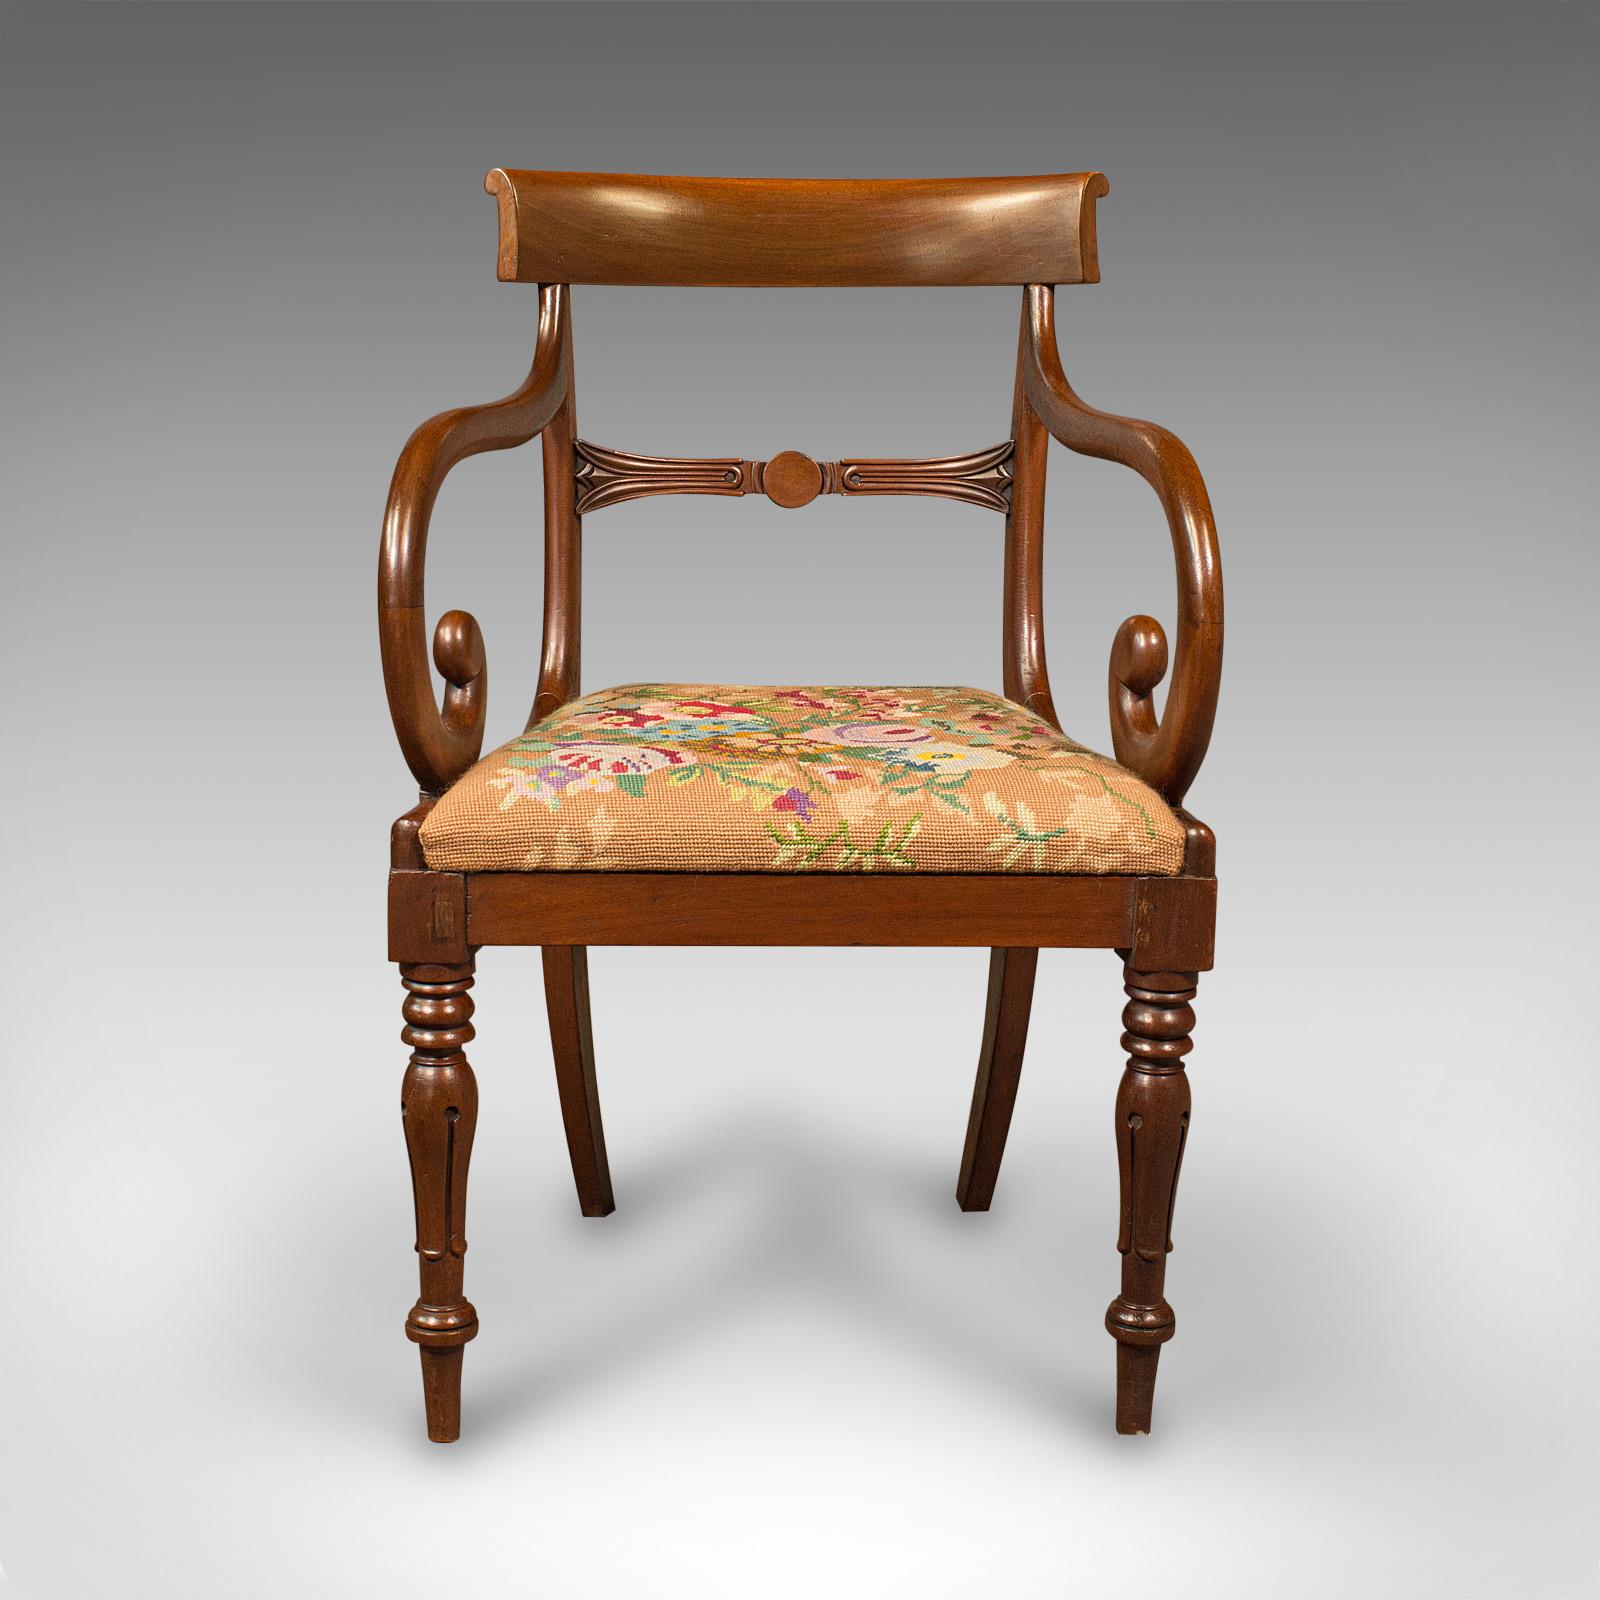 Il s'agit d'un fauteuil antique en forme de rouleau. Fauteuil anglais en acajou avec tapisserie à l'aiguille, datant de la période Regency, vers 1830.

Une forme serpentine remarquable avec une finition attrayante
Présentant une patine